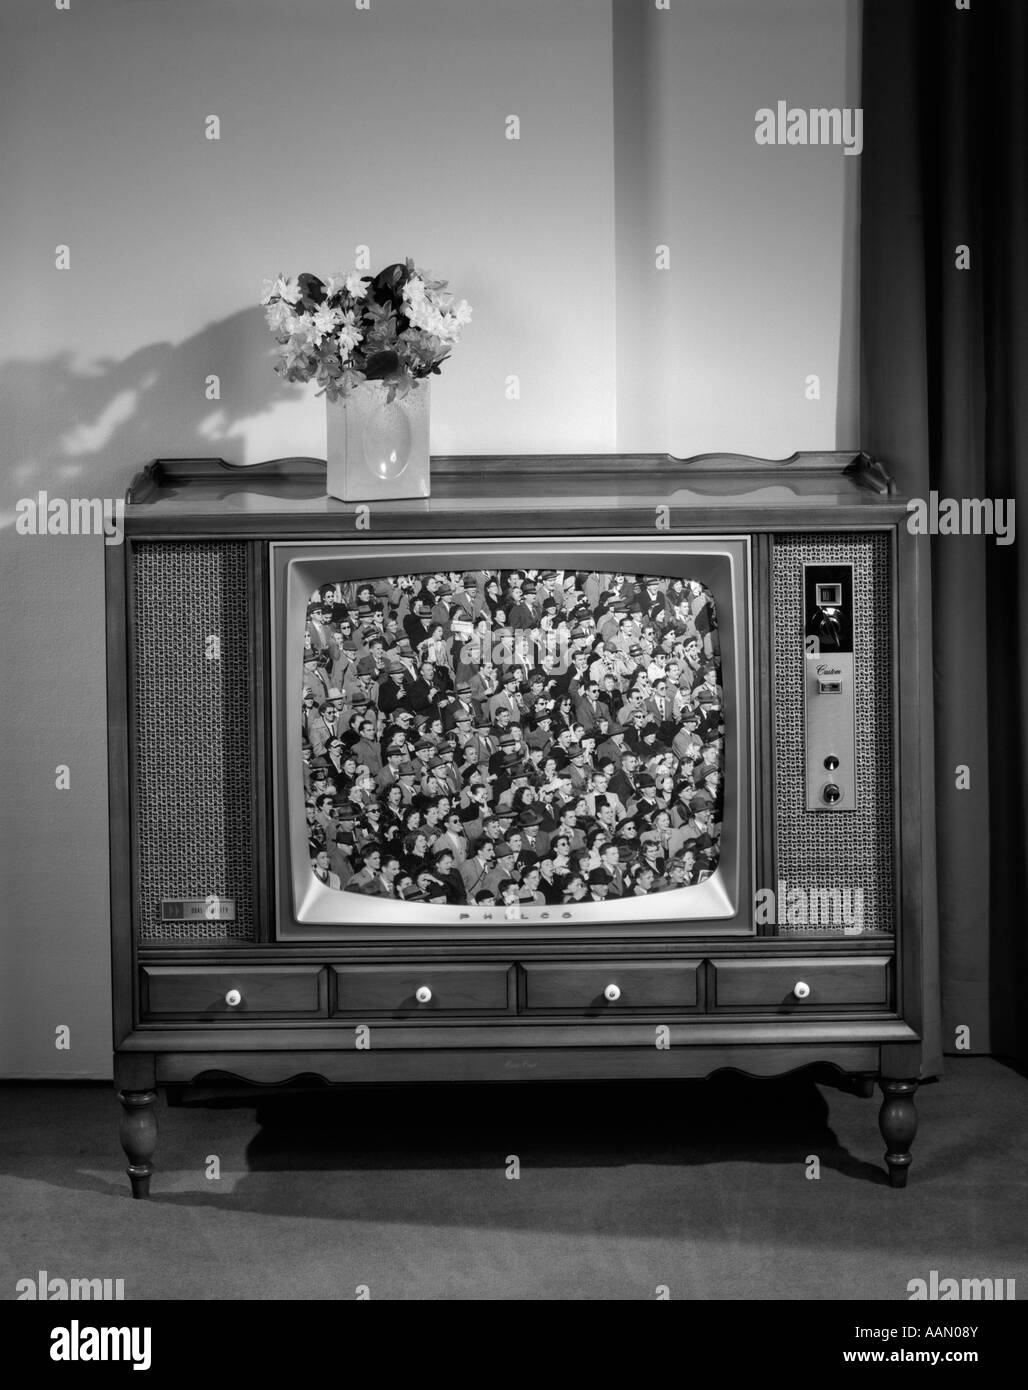 1960ER JAHREN FRONTALEN BLICK AUF FERNSEHER MIT MENSCHENMASSEN TRIBÜNE ON SCREEN Stockfoto